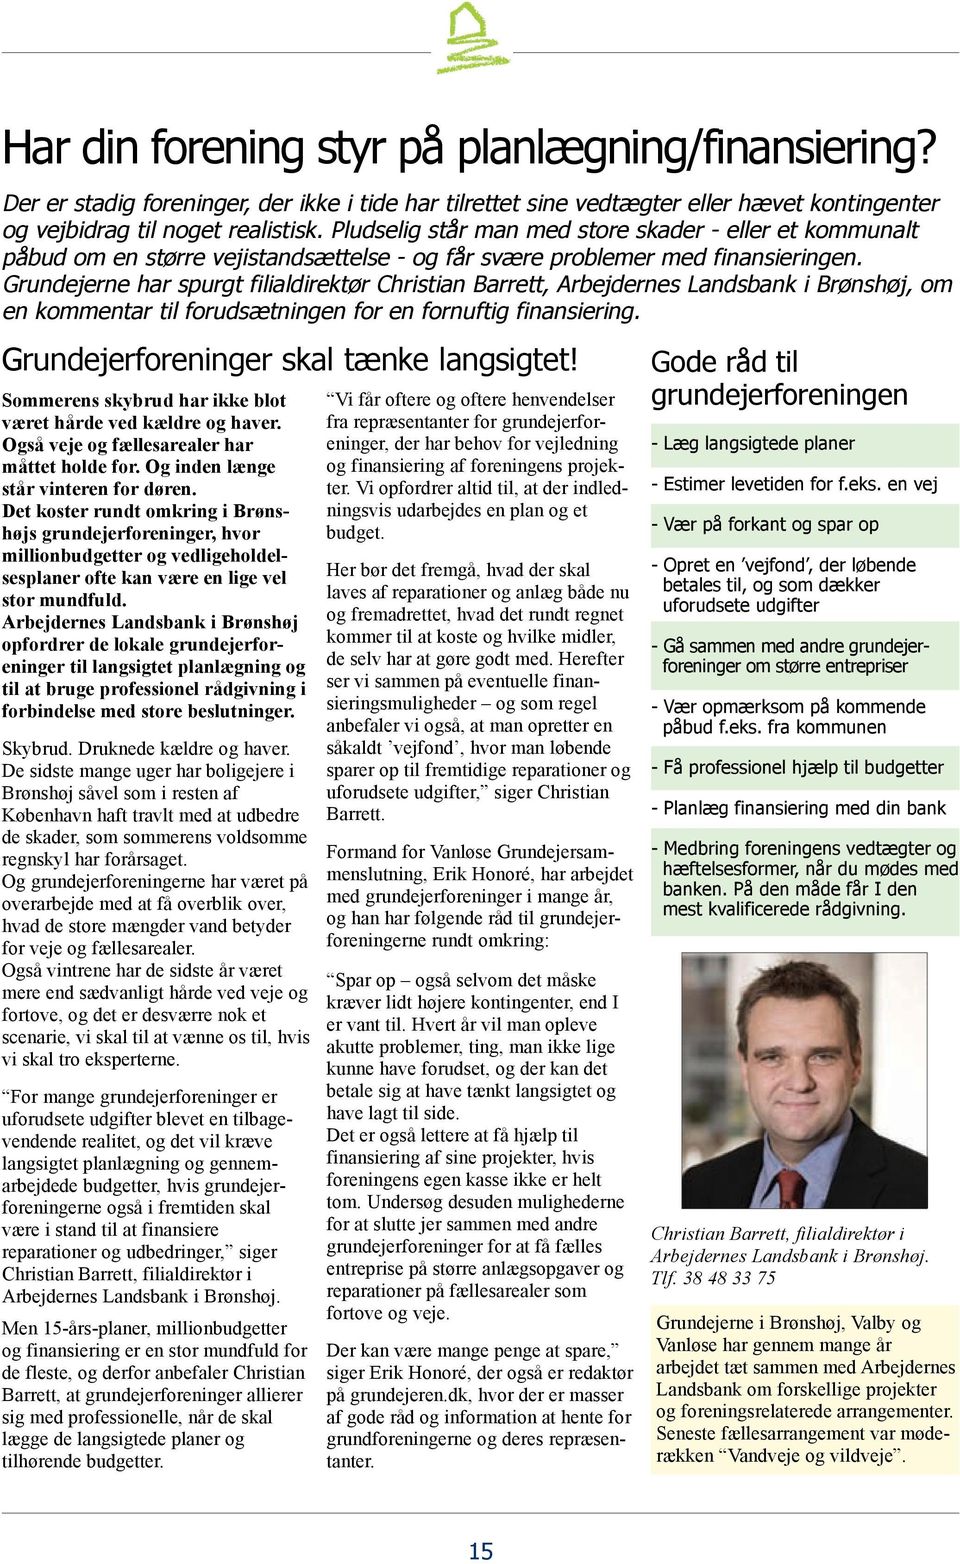 Grundejerne har spurgt filialdirektør Christian Barrett, Arbejdernes Landsbank i Brønshøj, om en kommentar til forudsætningen for en fornuftig finansiering. Grundejerforeninger skal tænke langsigtet!